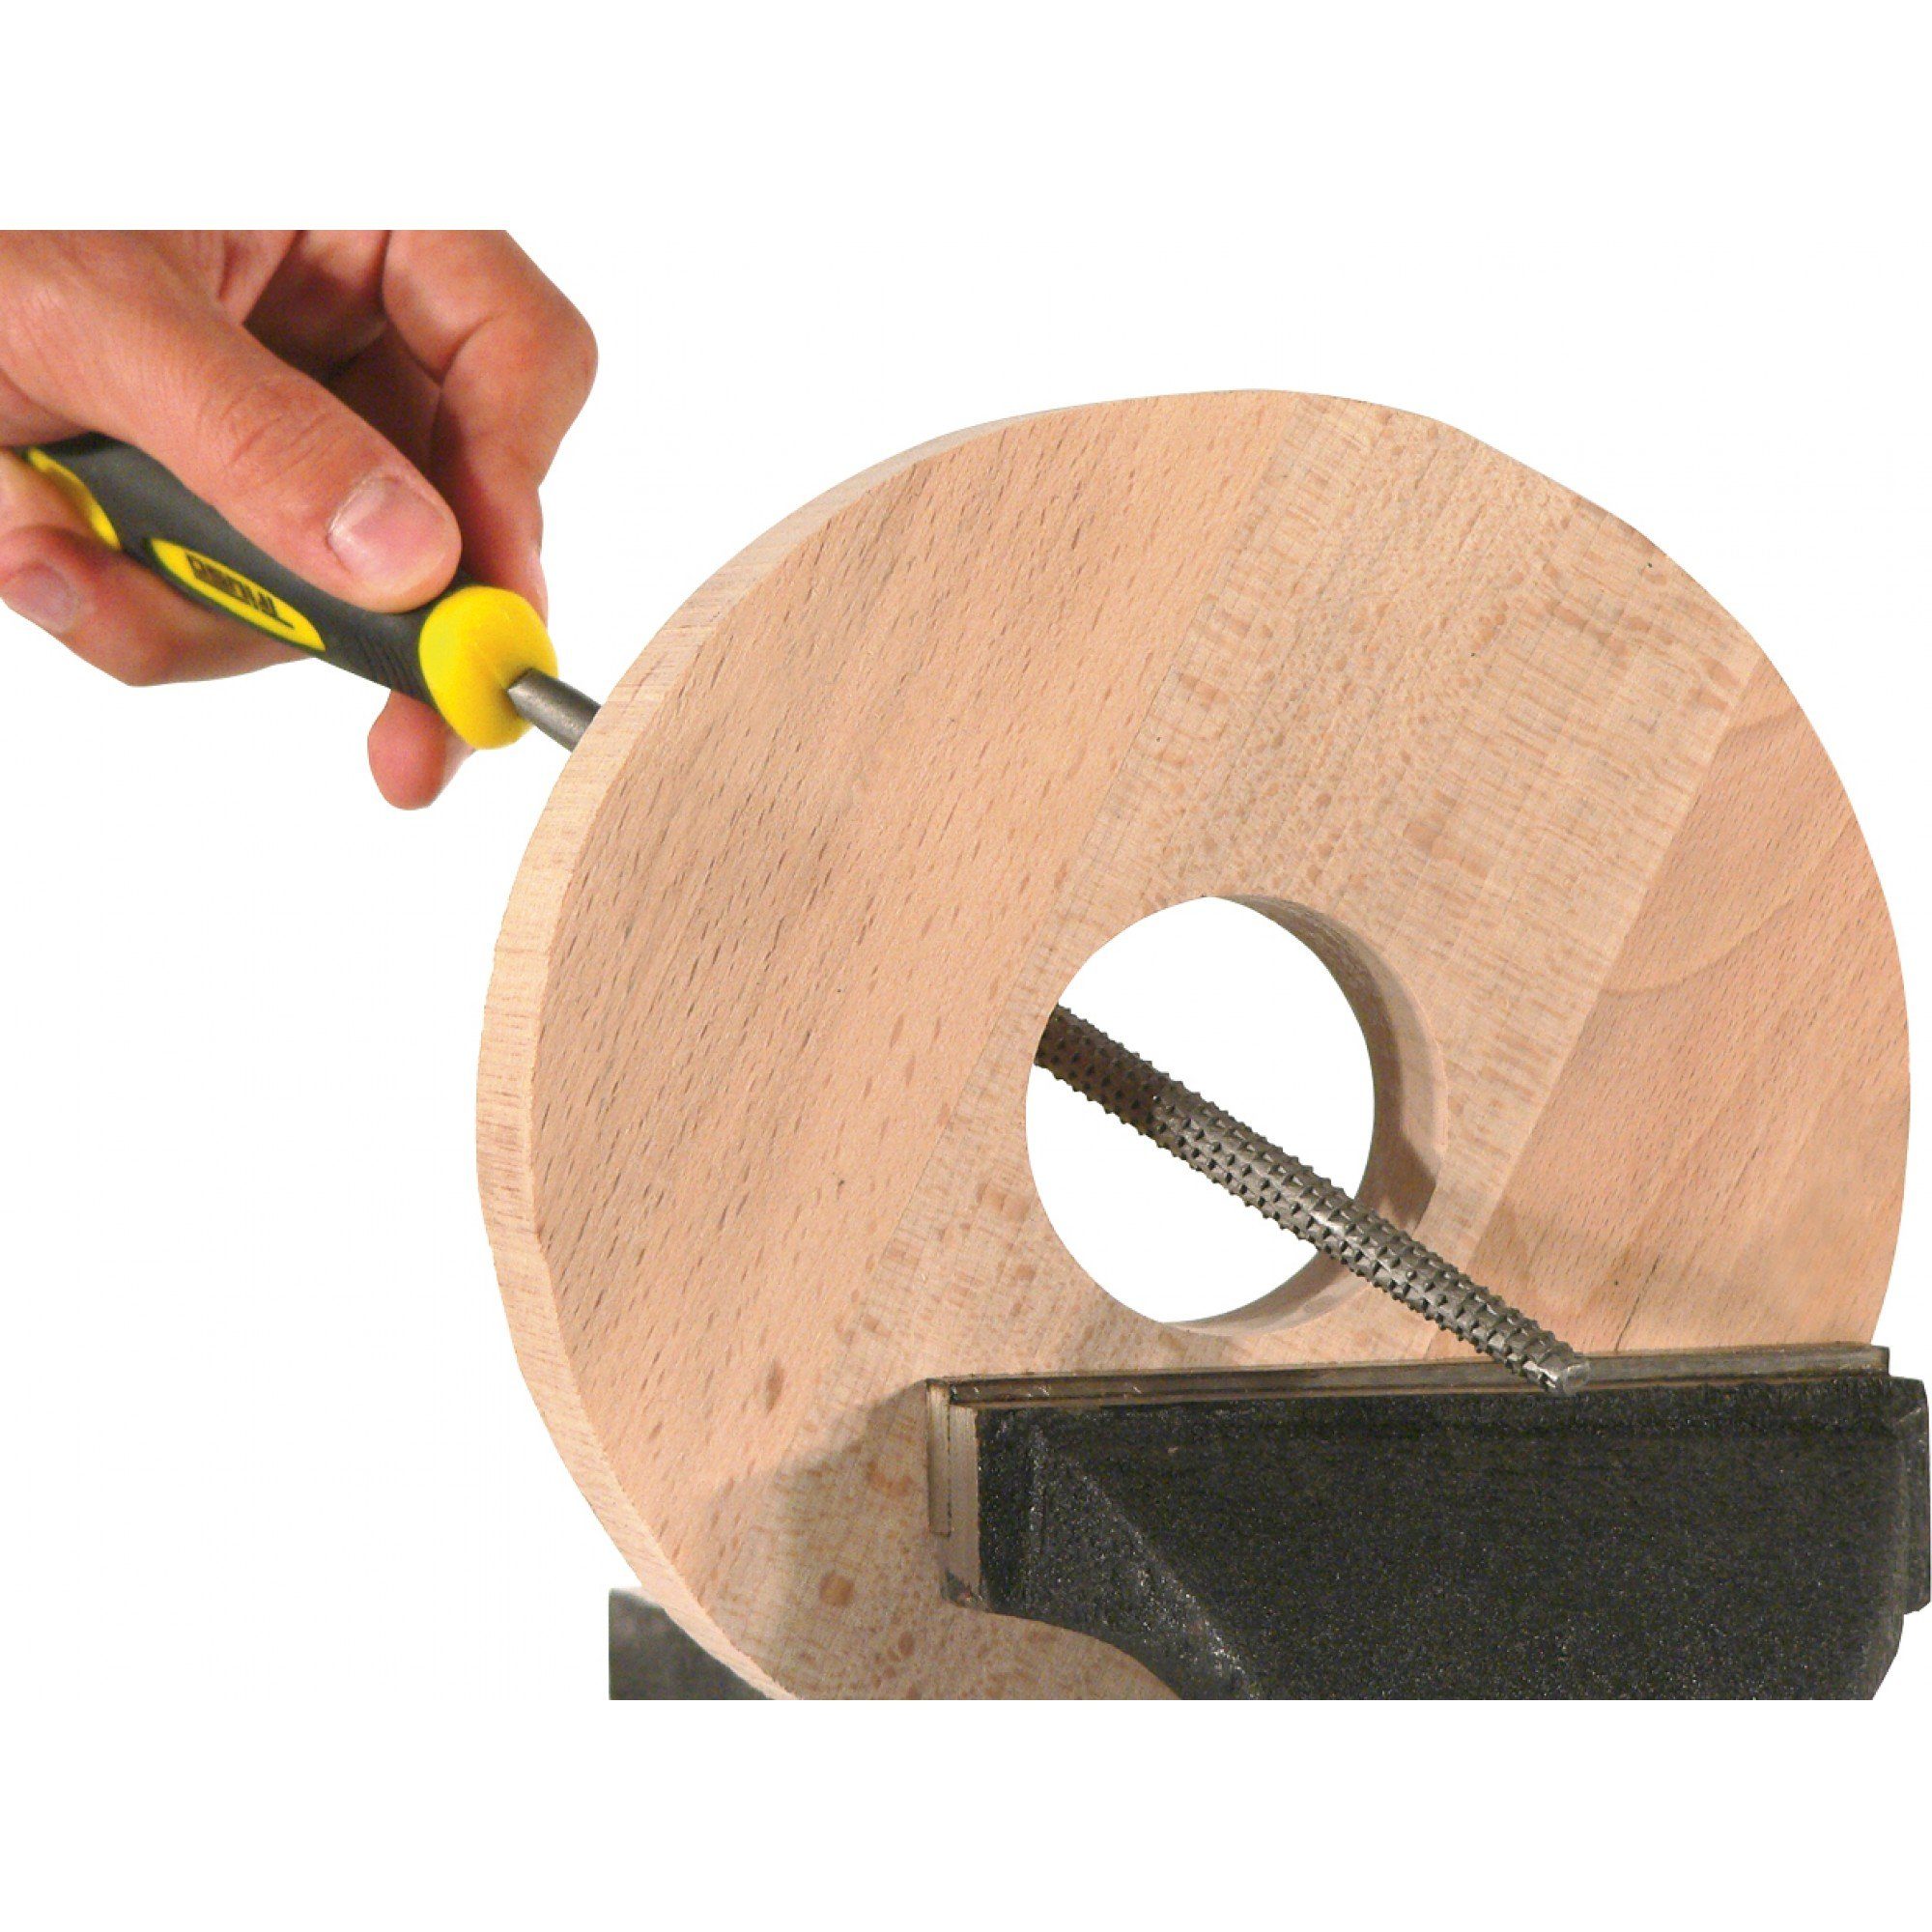 Hieb Raspel mit Holzraspel Triuso rund Kunststoff-Griff handlichem 200 mm 2,